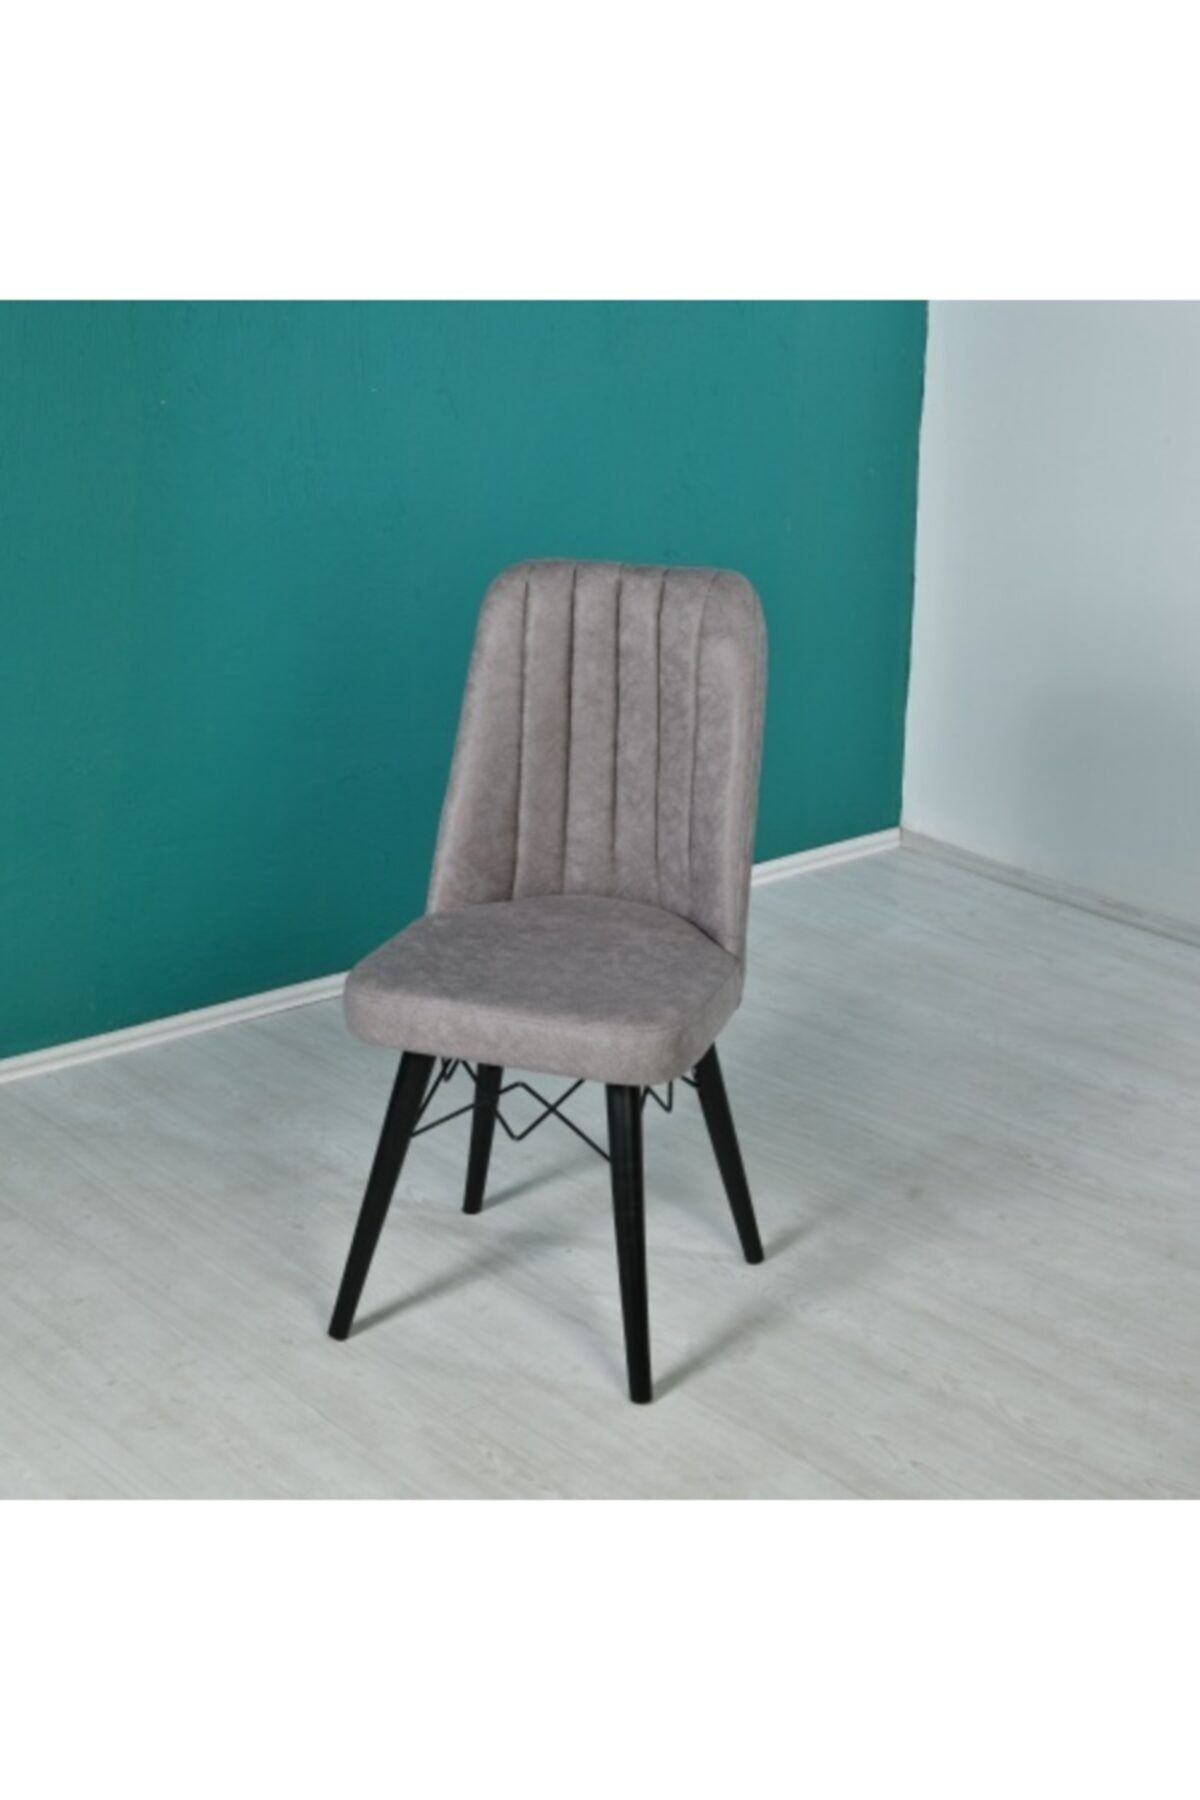 Set masa extensibila cu 6 scaune tapitate Homs cargold 250-30051 negru- gri 170 x 80 cm